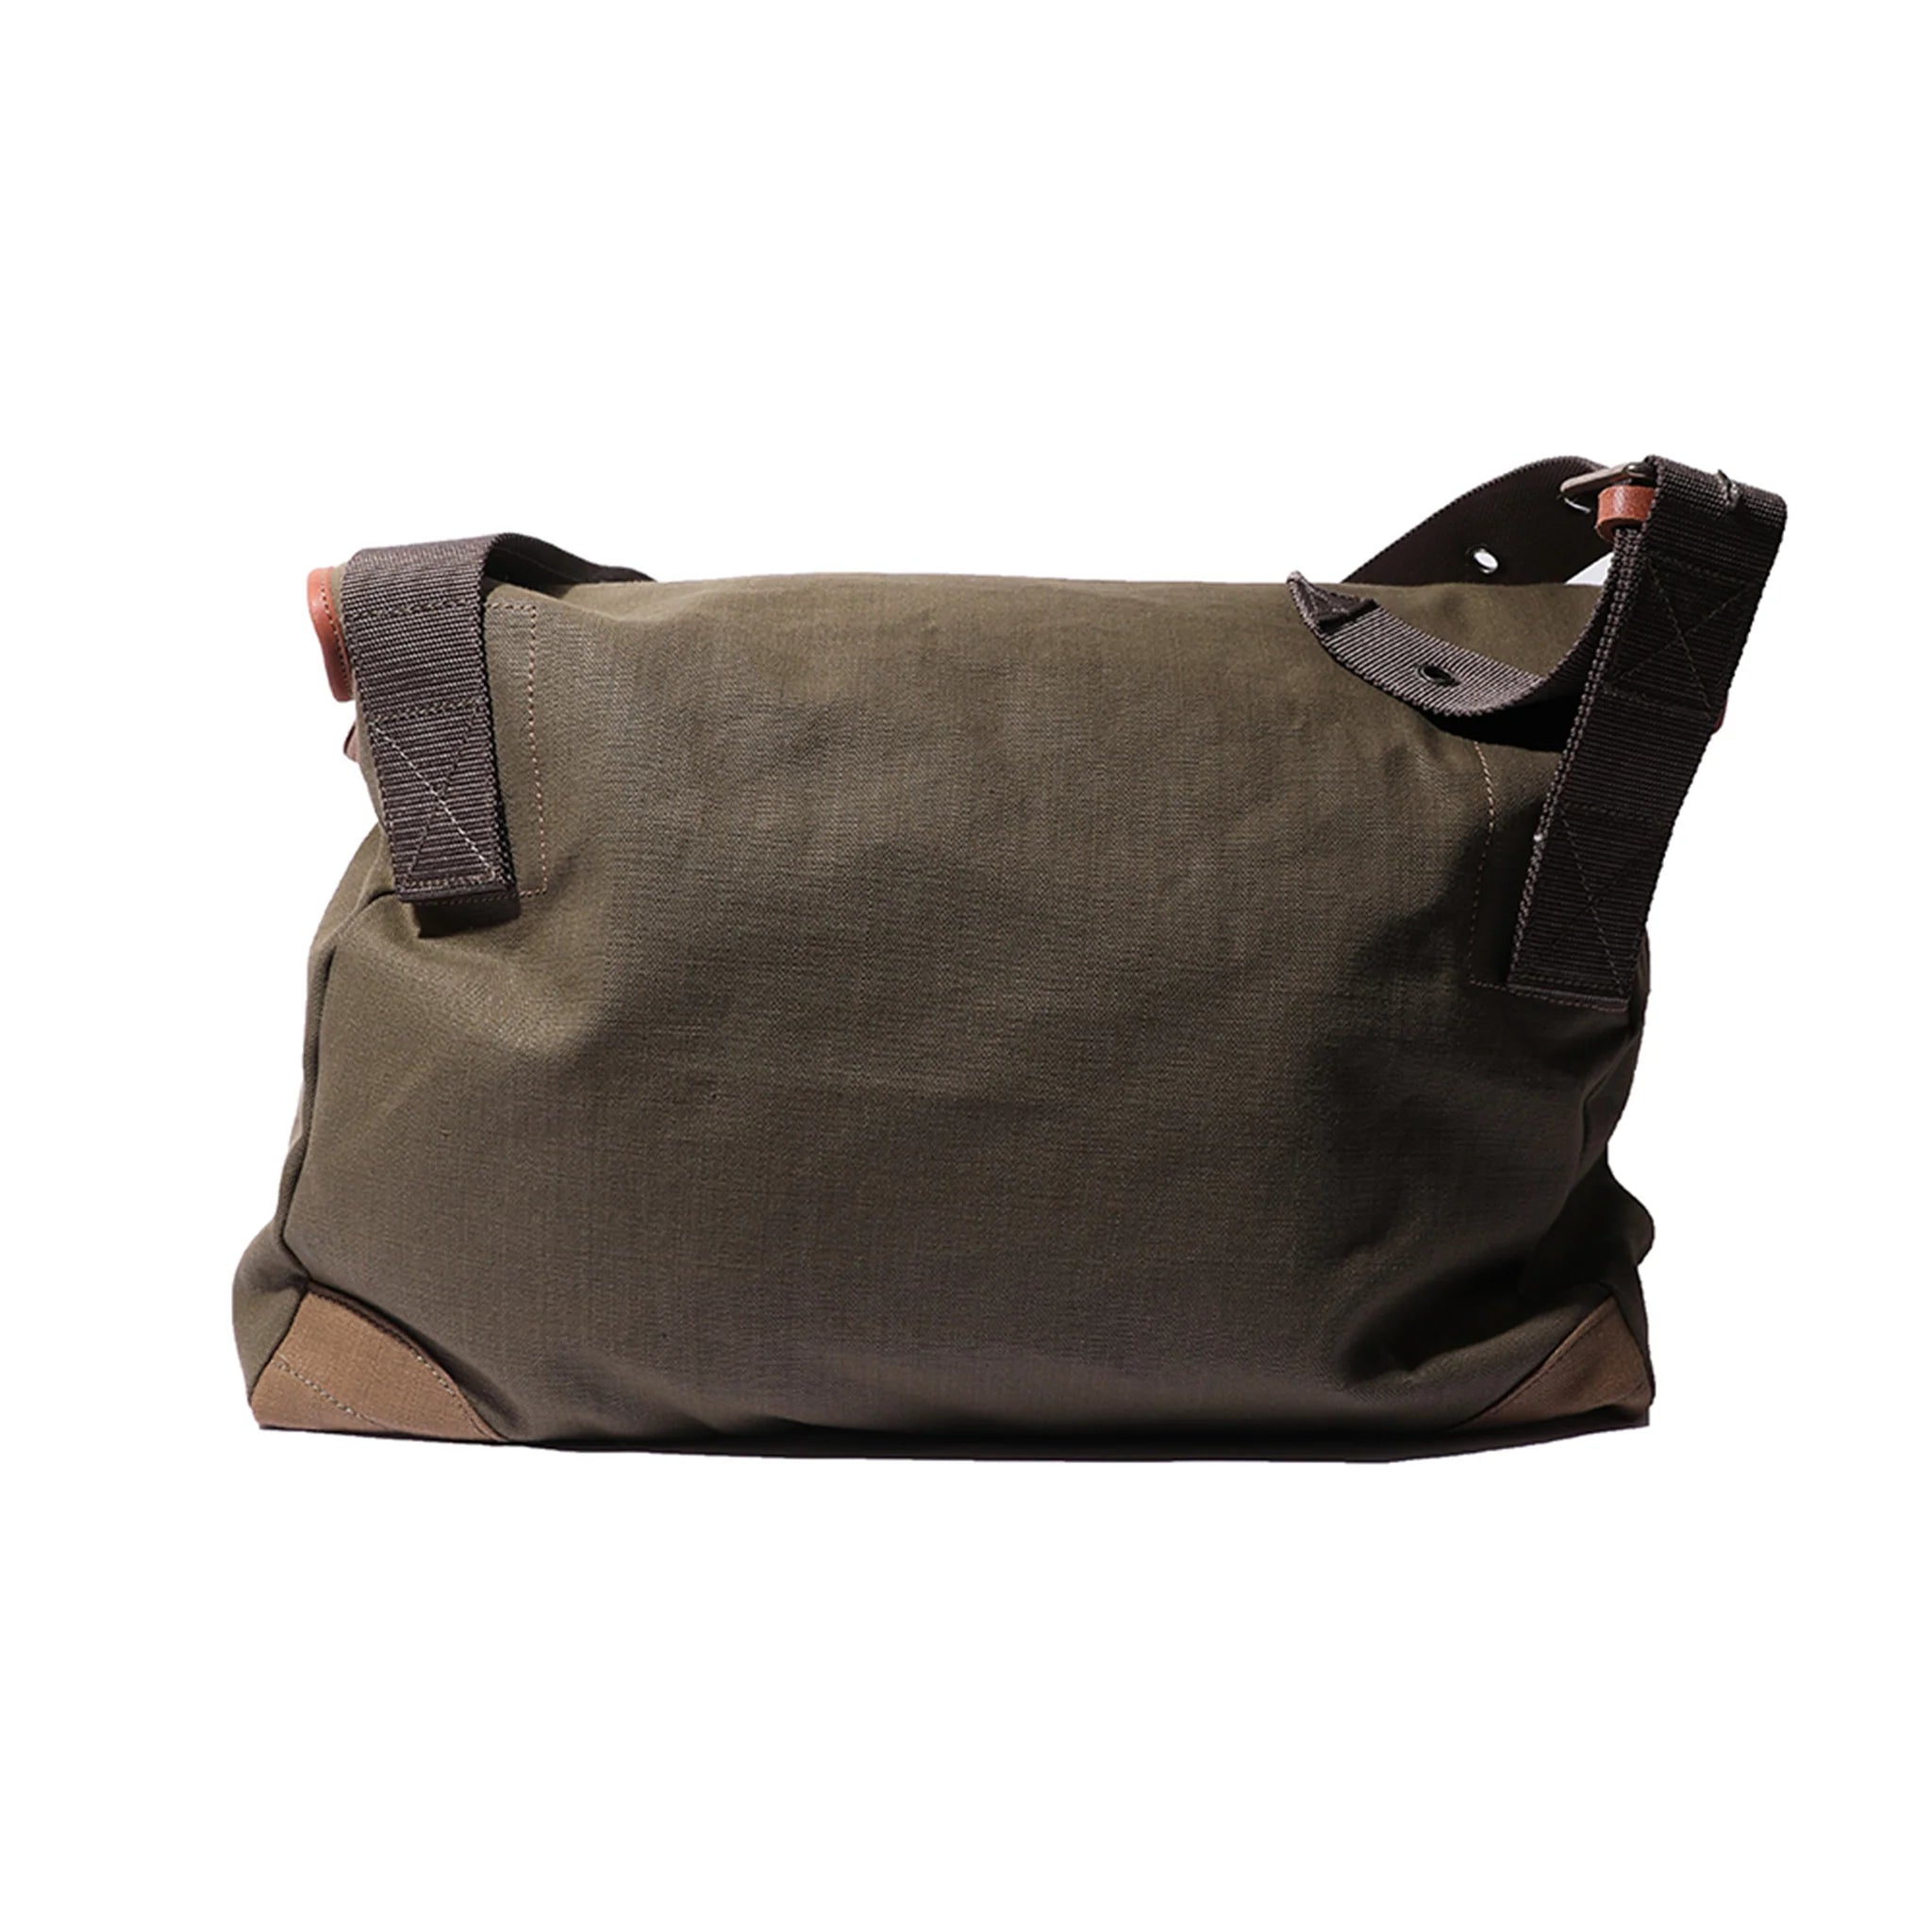 Colimbo military bag